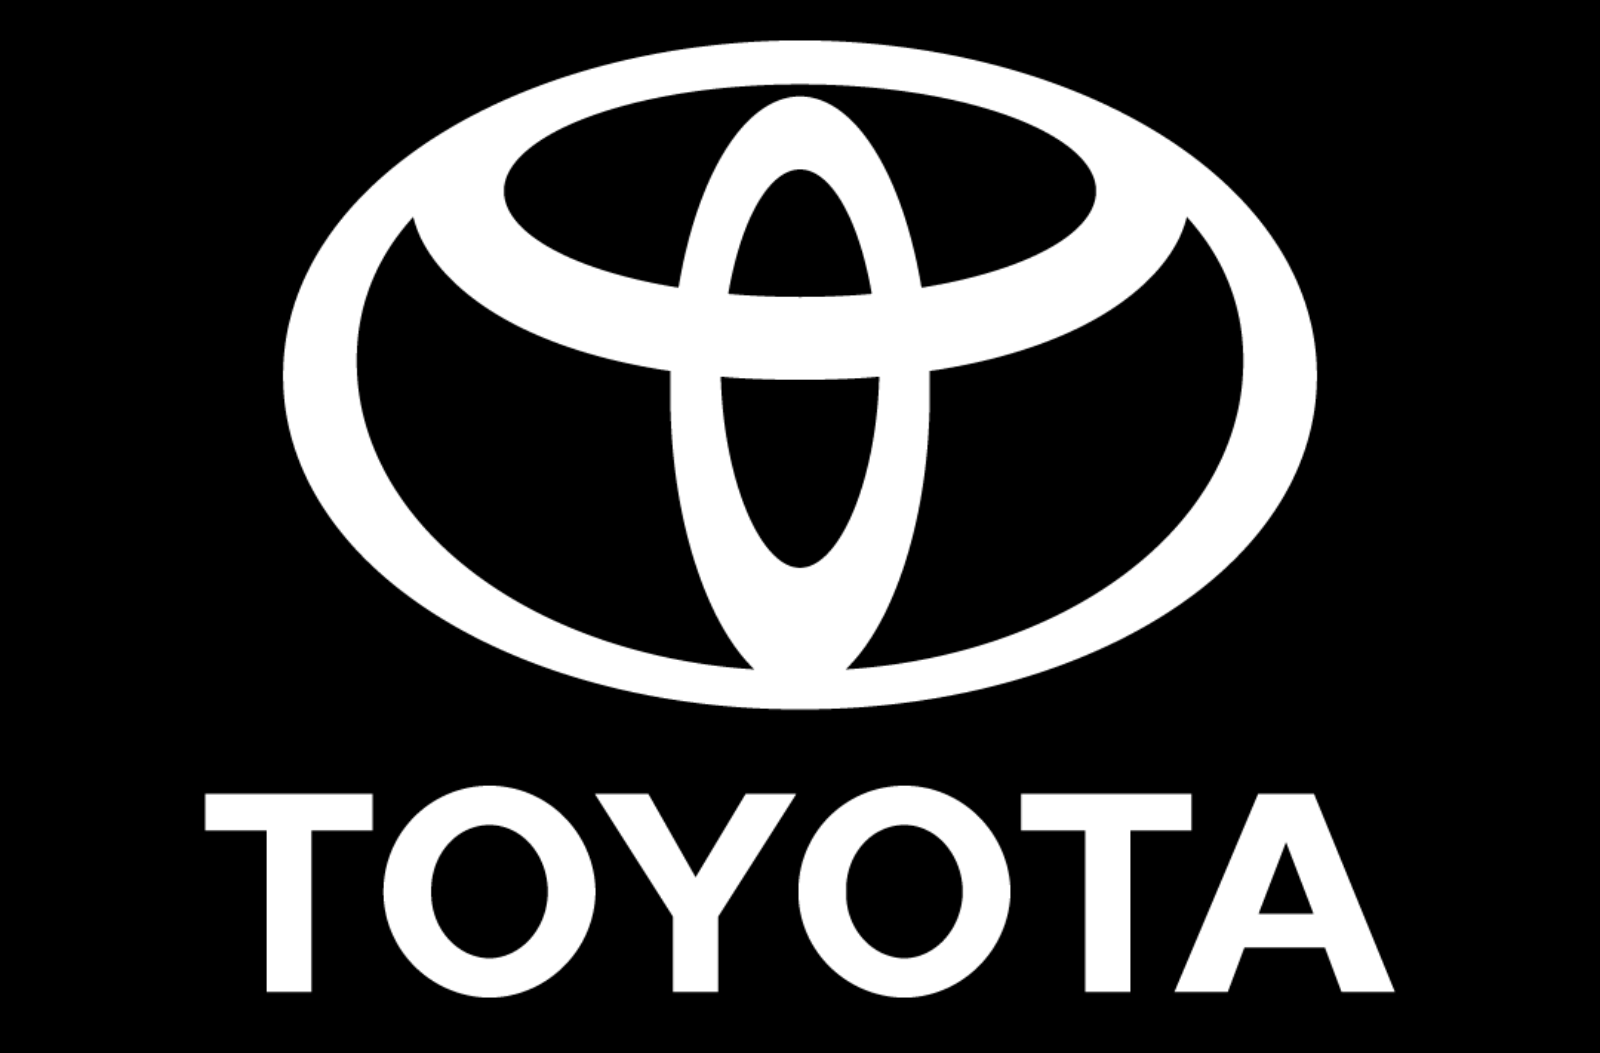 Toyota gibt WICHTIGE Partnerschaft mit Huawei für die Automobilproduktion bekannt